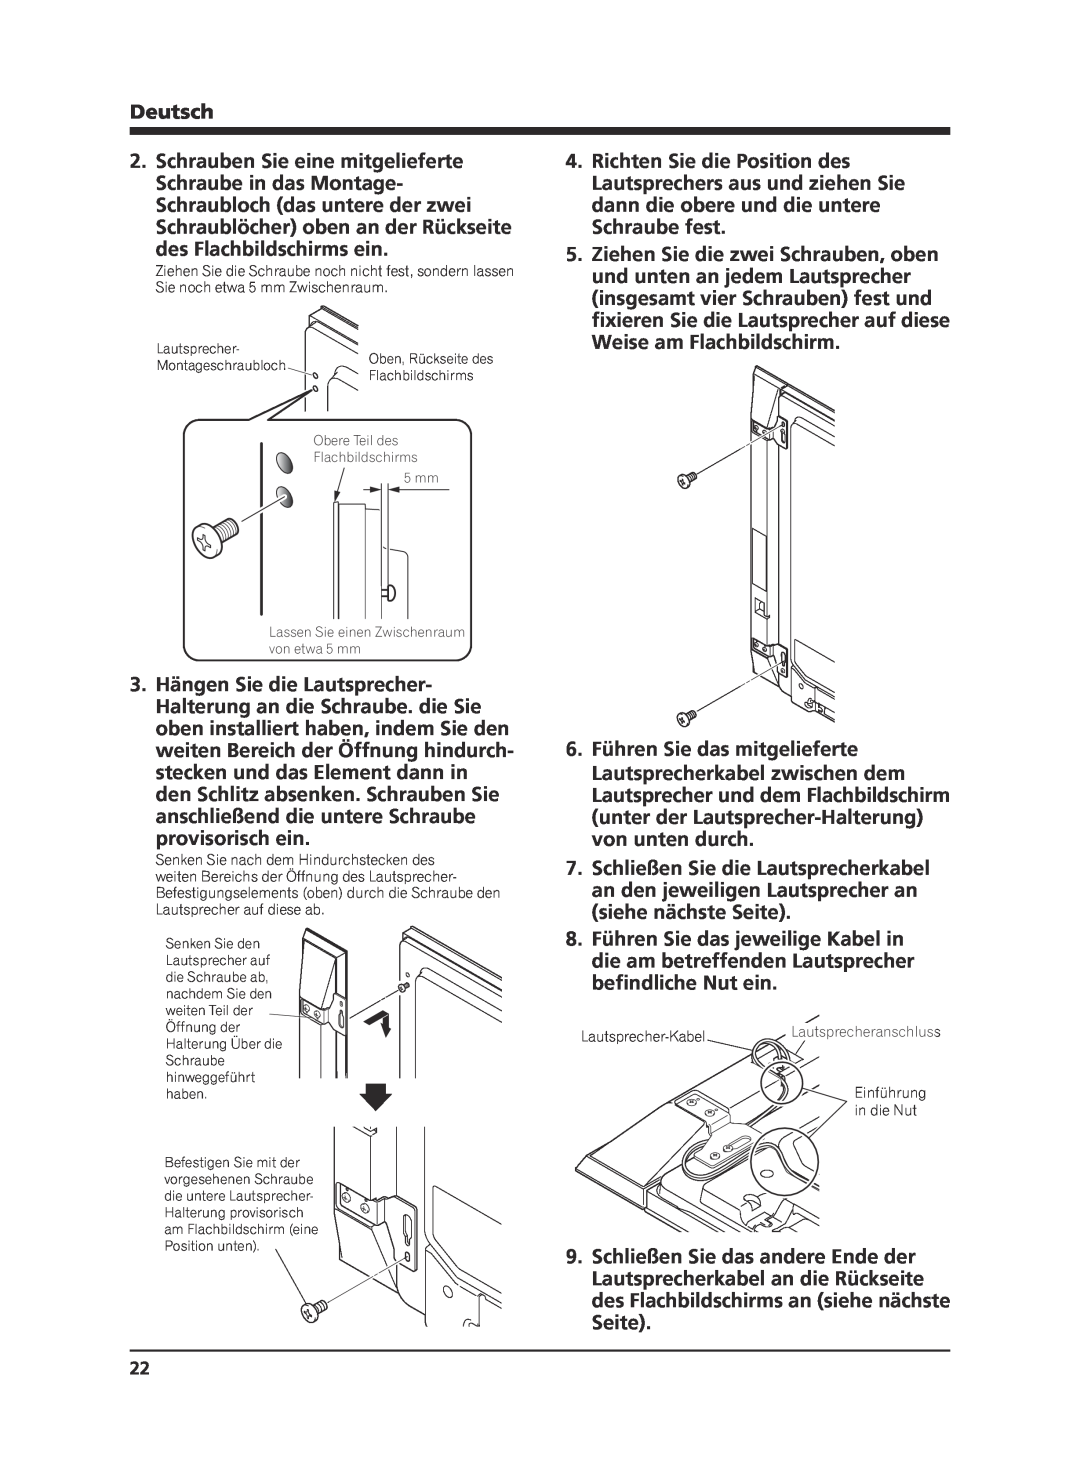 Pioneer KRP-S02 manual des Flachbildschirms ein, provisorisch ein, 6.Führen Sie das mitgelieferte, Deutsch 